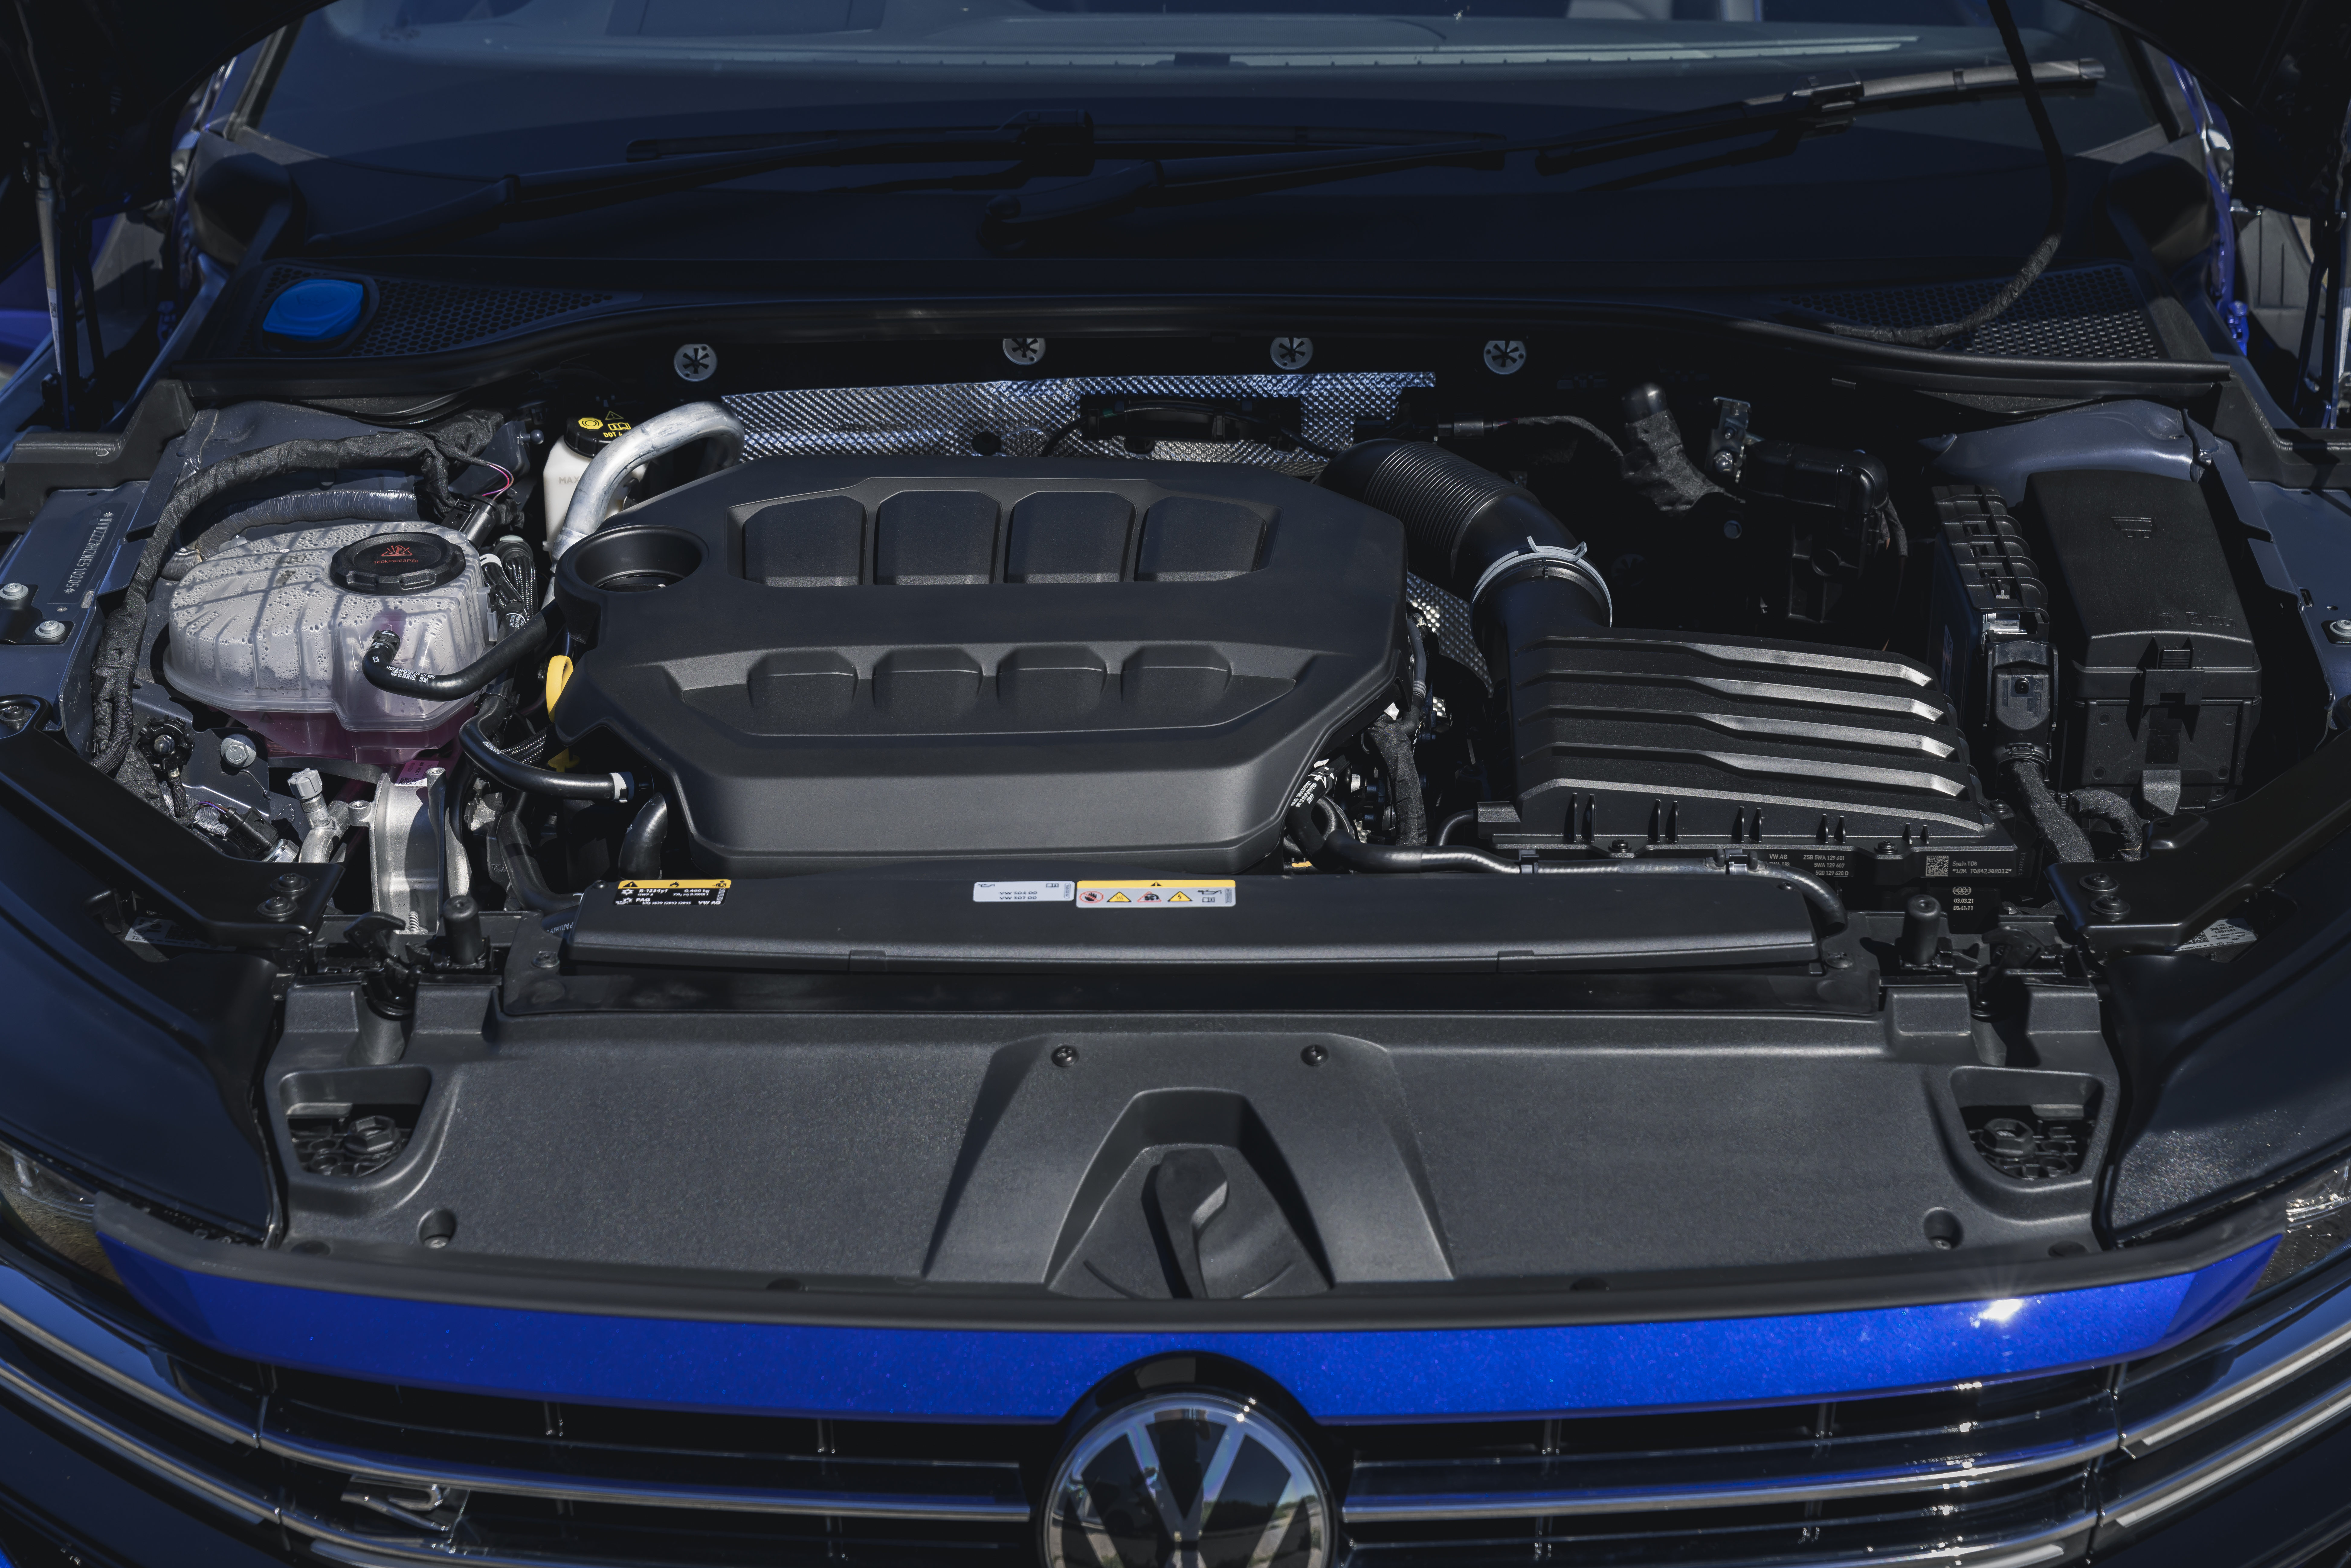 Volkswagen Arteon R Shooting Brake